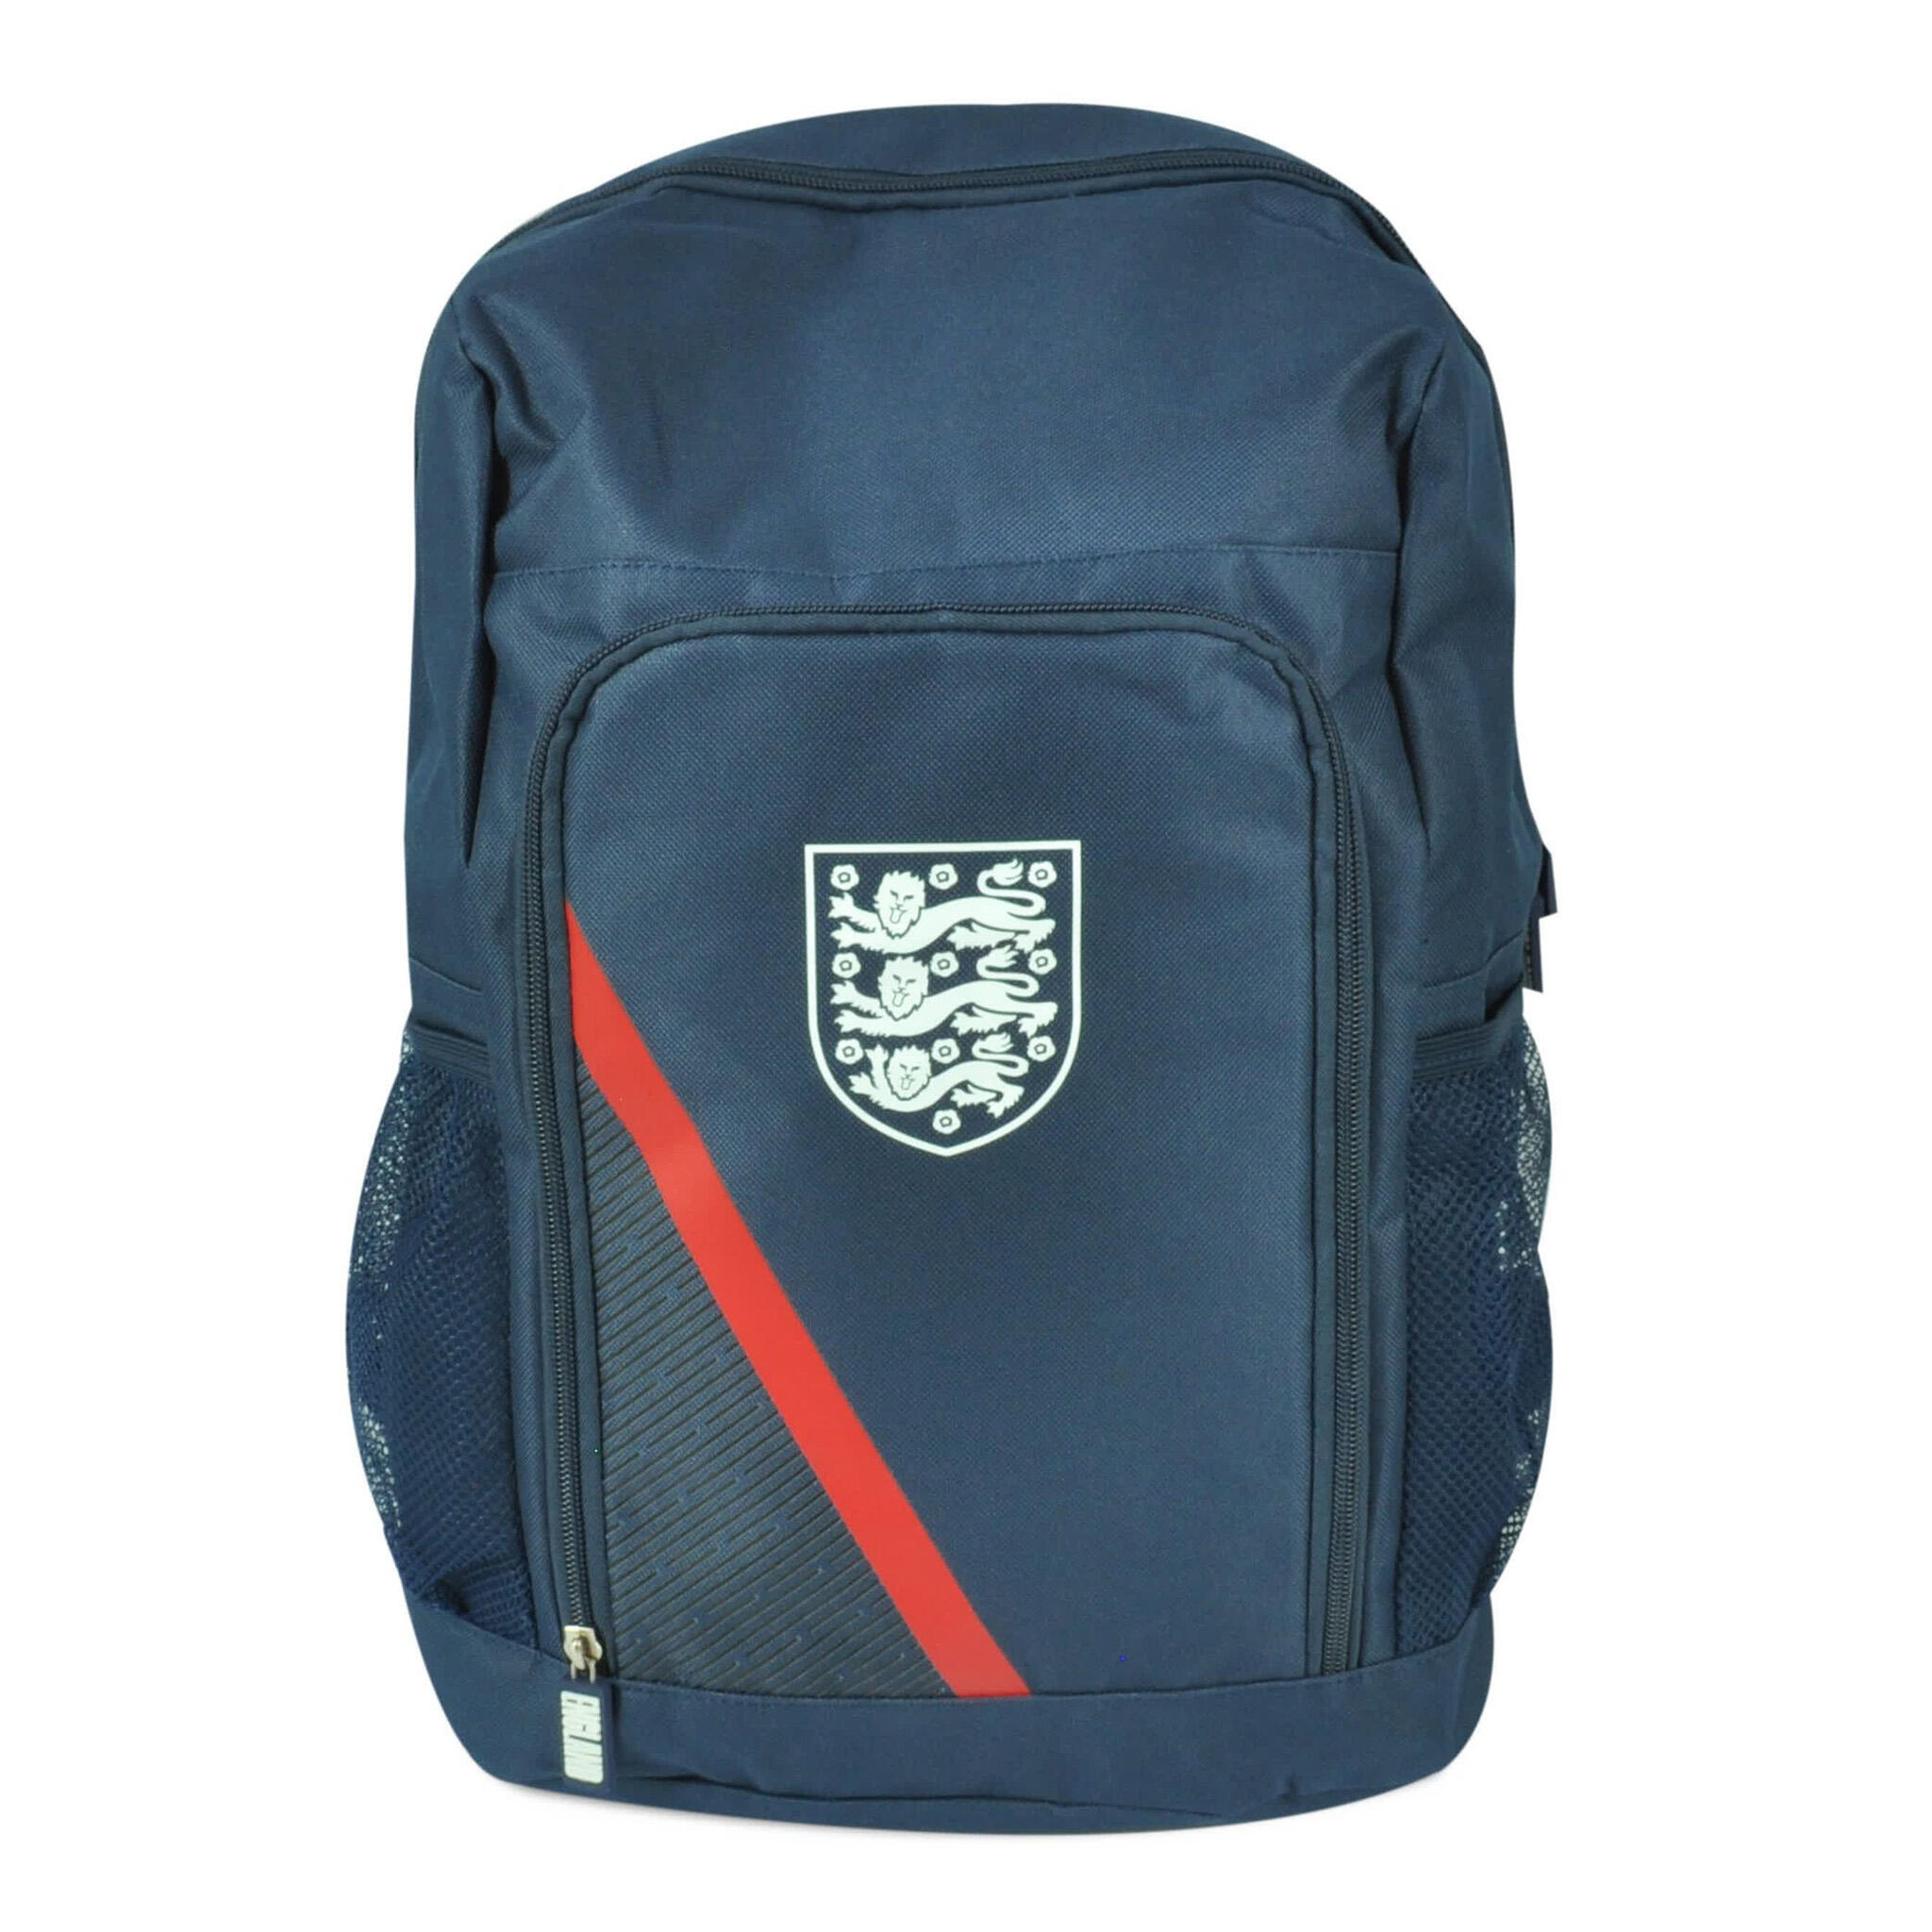 HY-PRO FA Large Multi Pocket Backpack